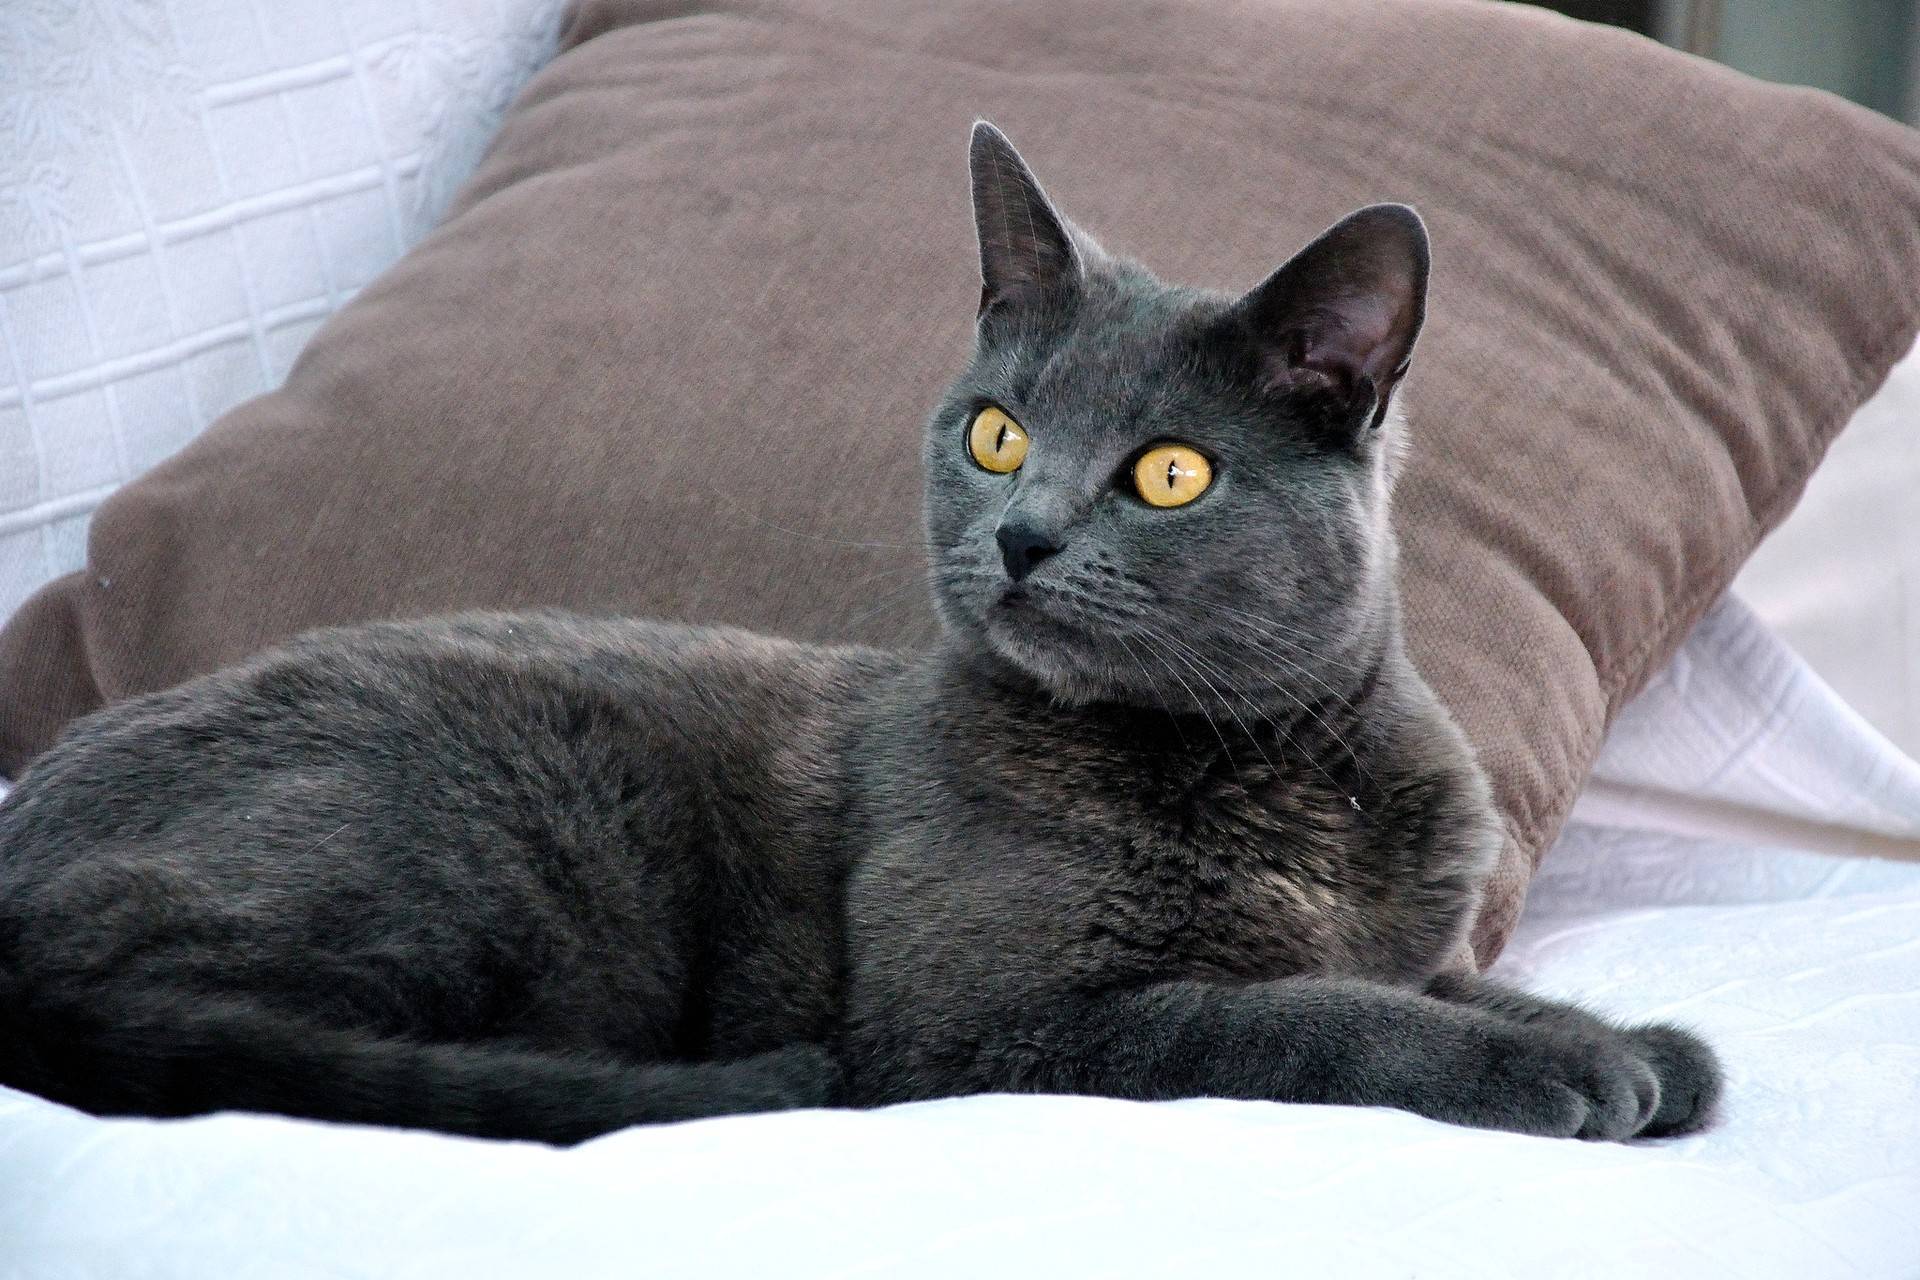 Картезианская кошка: цвет шерсти и характер шартреза, уход за питомцем и его содержание, выбор котёнка, отзывы владельцев, фото кота